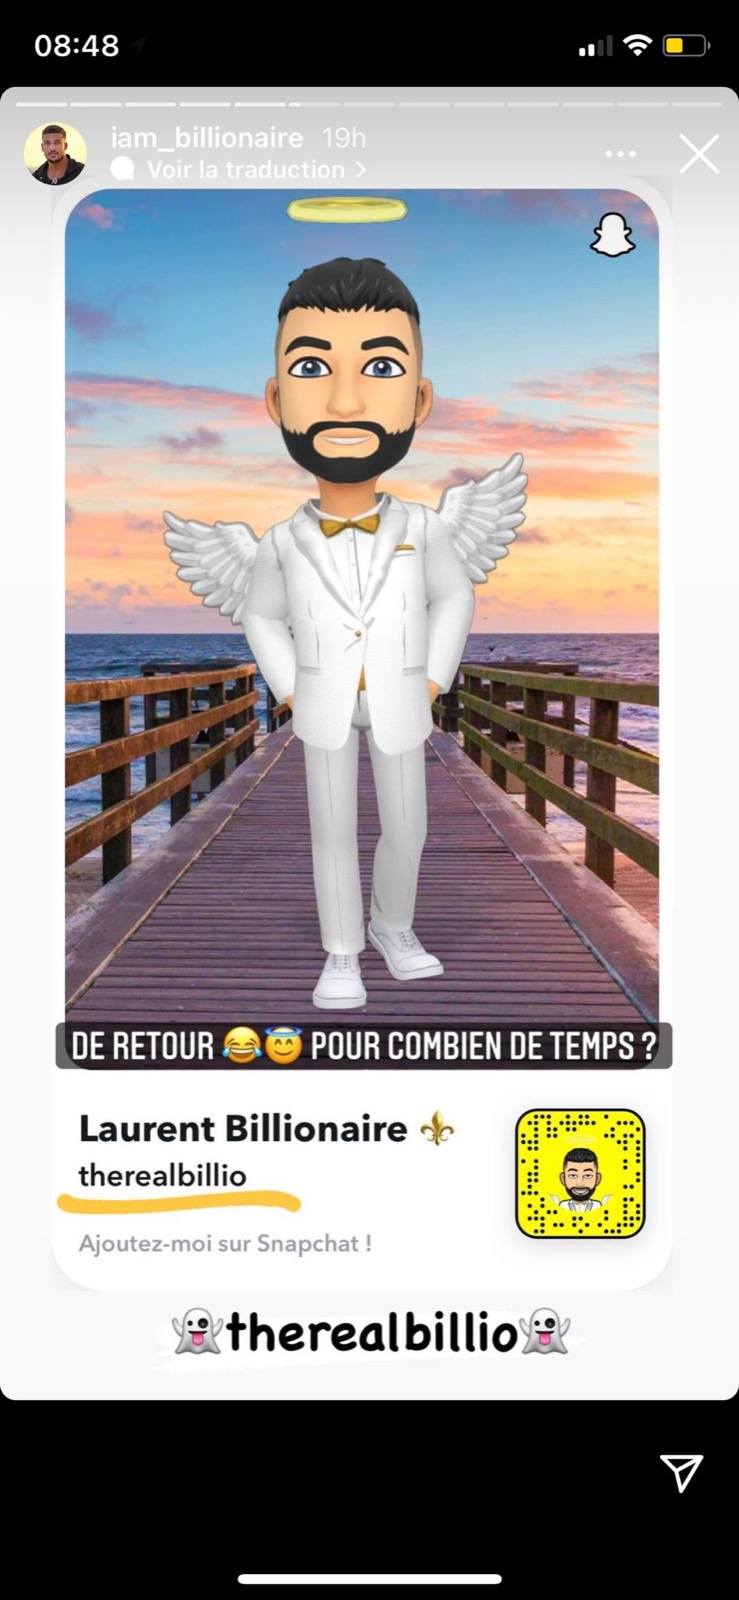 Laurent Correia : après la suppression de son compte Snapchat, il serait blacklisté 